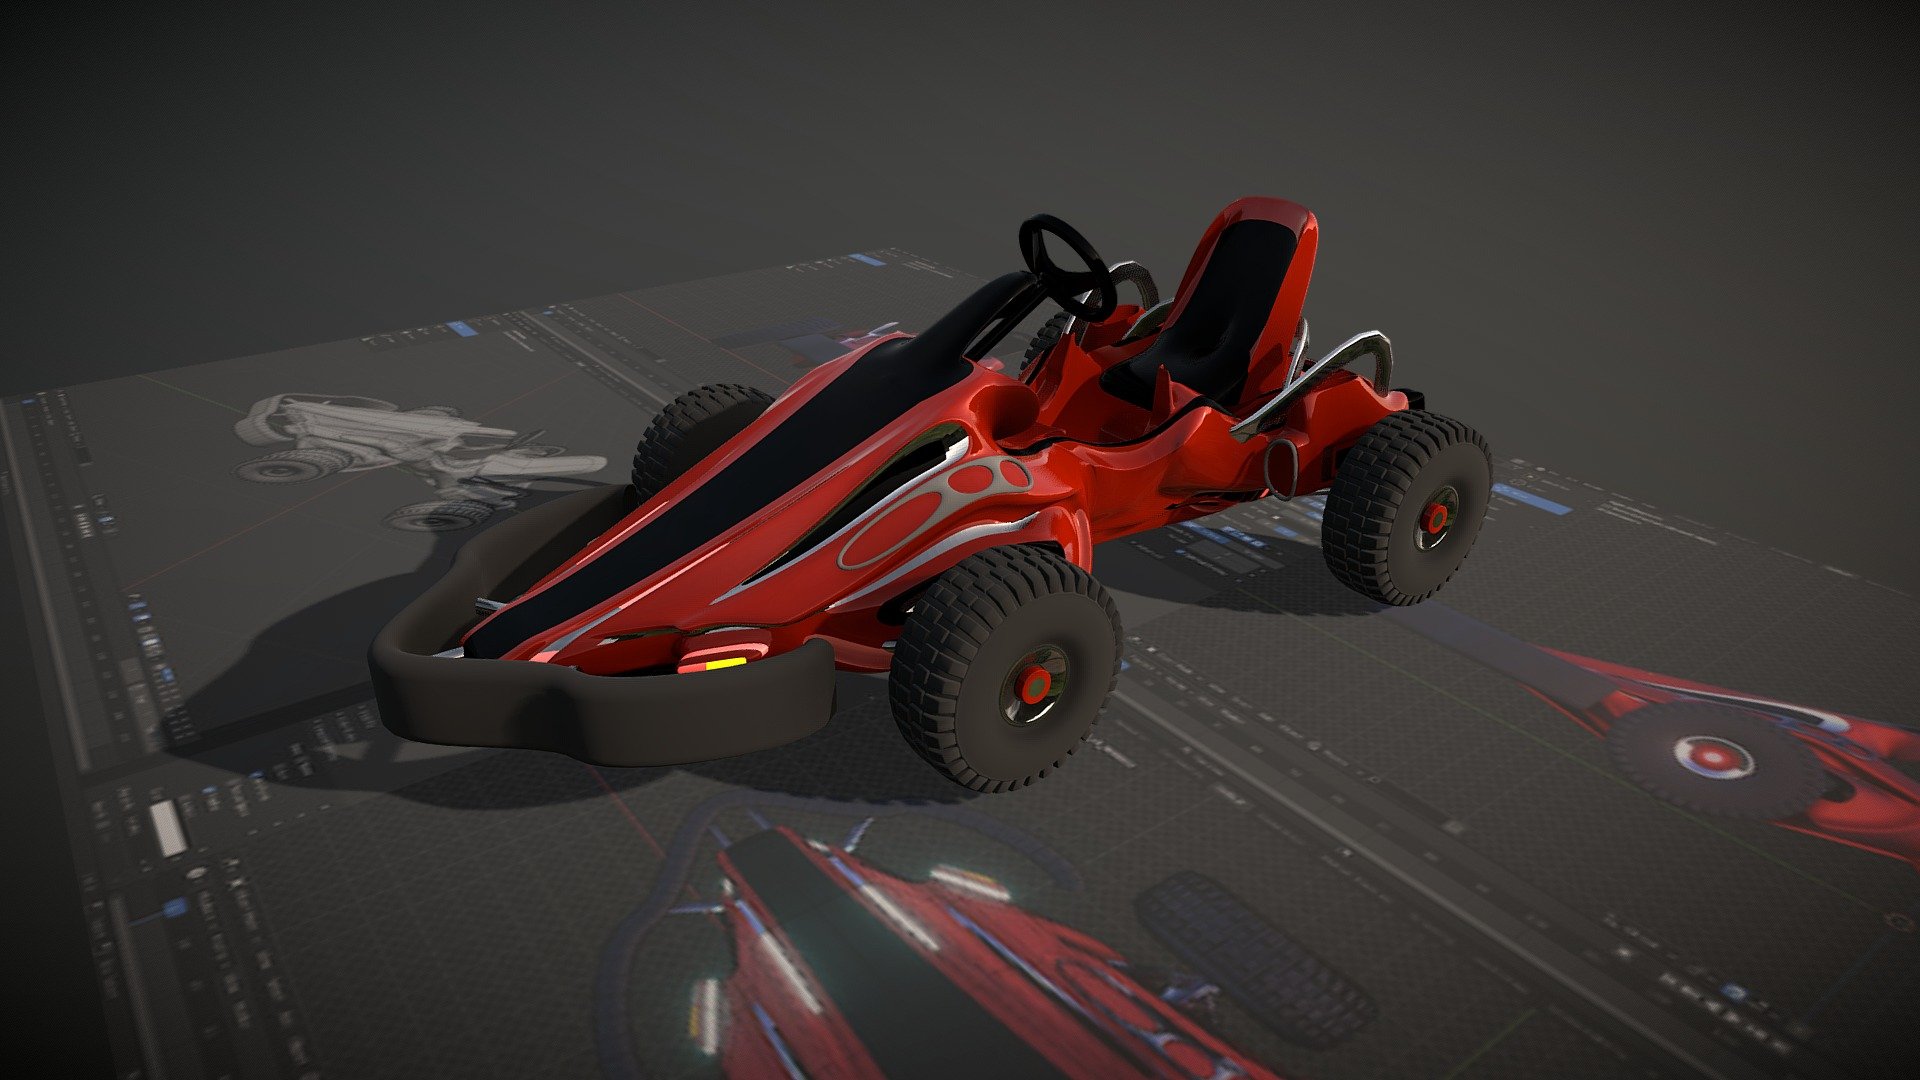 conceptual go kart model.
designed with blender 3d model